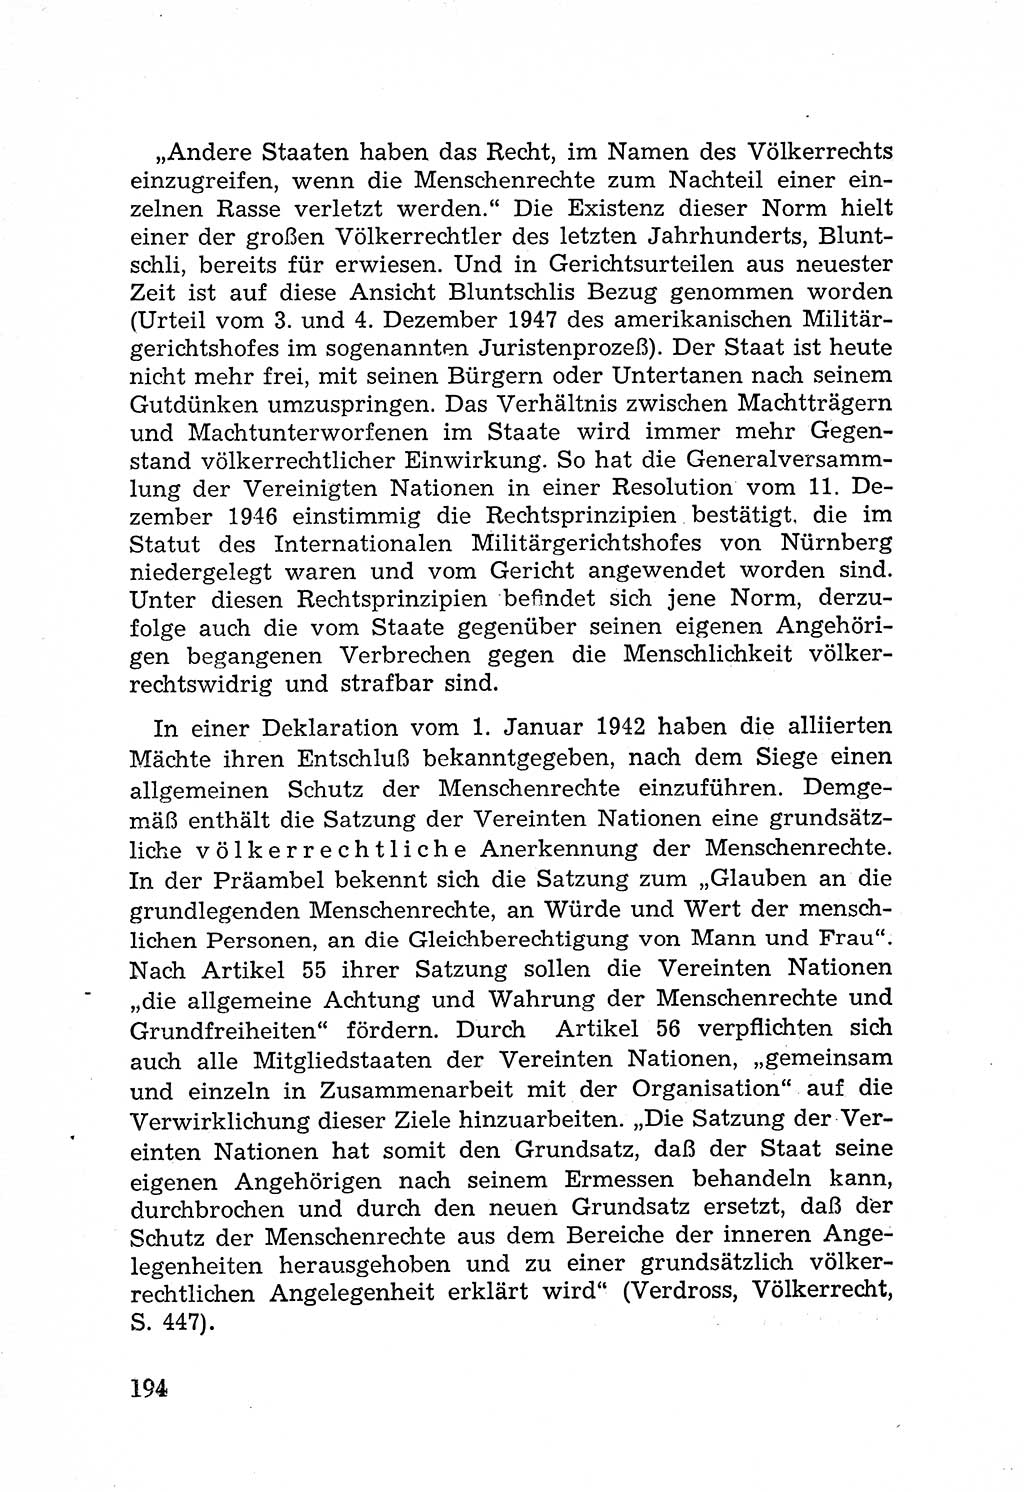 Rechtsstaat in zweierlei Hinsicht, Untersuchungsausschuß freiheitlicher Juristen (UfJ) [Bundesrepublik Deutschland (BRD)] 1956, Seite 194 (R.-St. UfJ BRD 1956, S. 194)